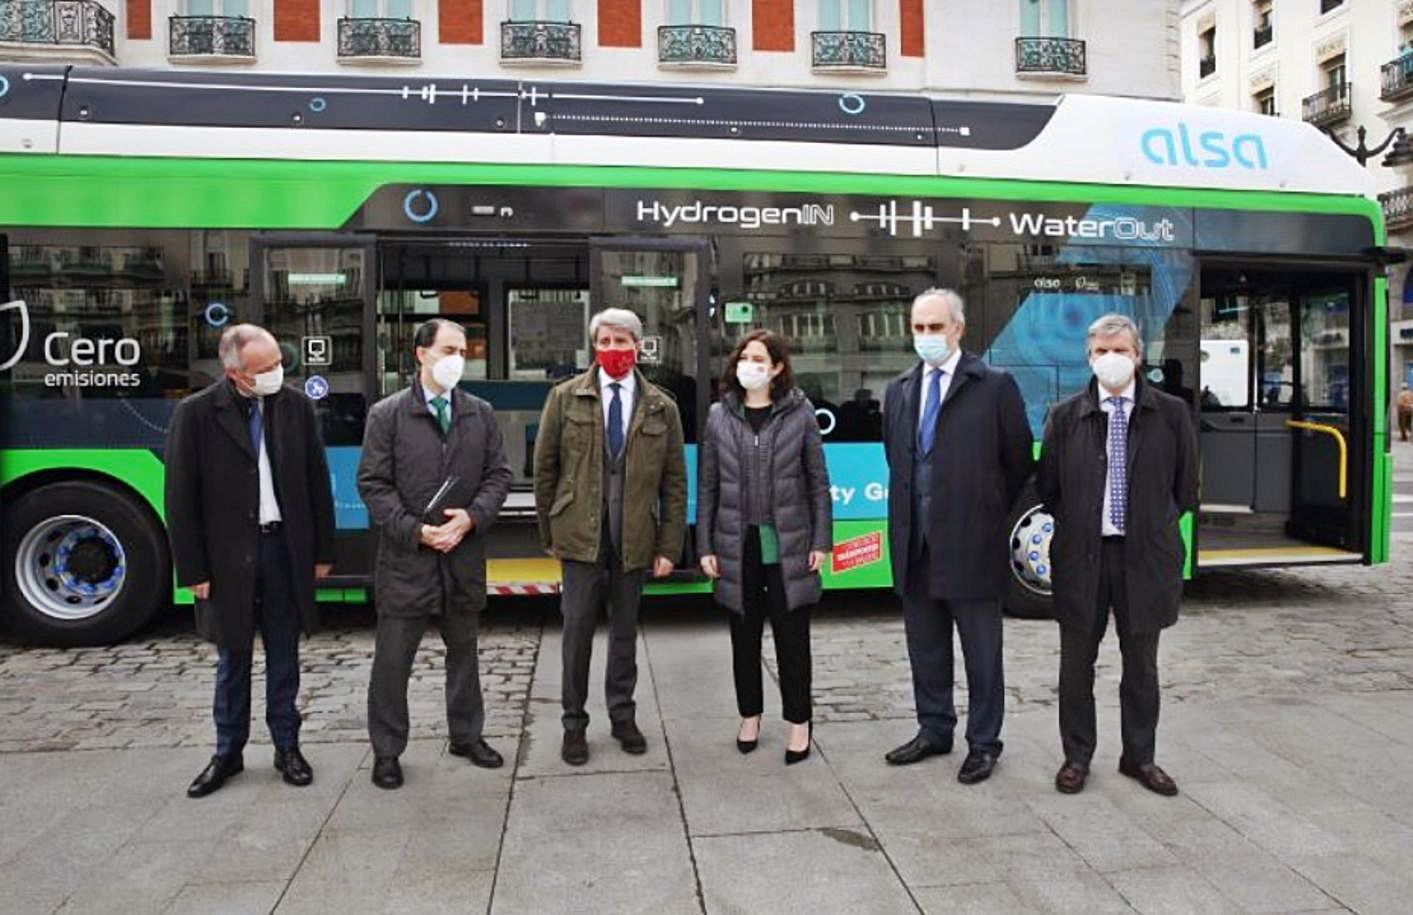 Presentación en Madrid del autobús de Alsa propulsado por hidrógeno. | Alsa